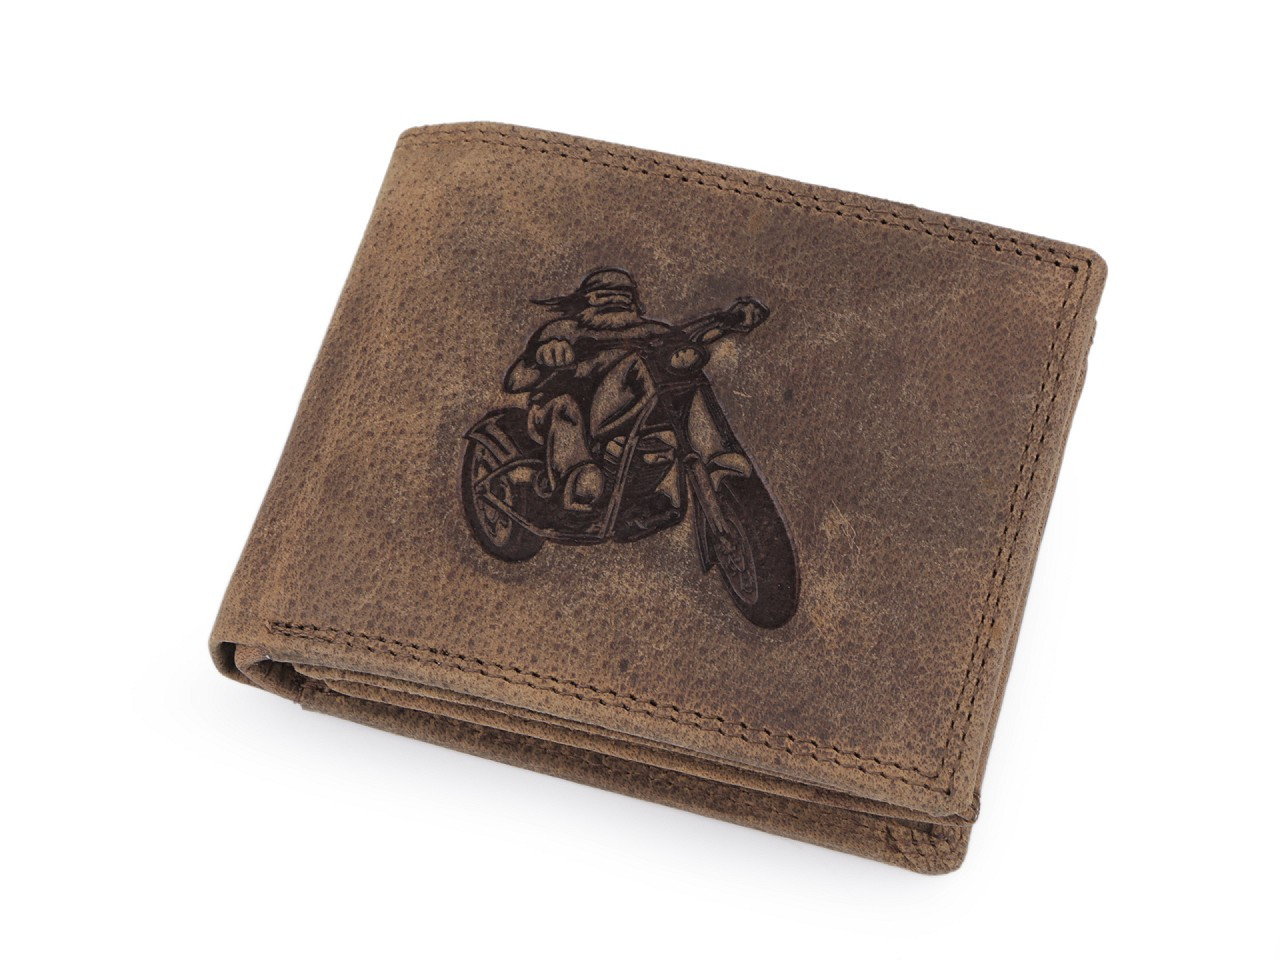 Pánská peněženka kožená pro myslivce, rybáře, motorkáře 9,5x12 cm, barva 11 hnědá světlá motorka